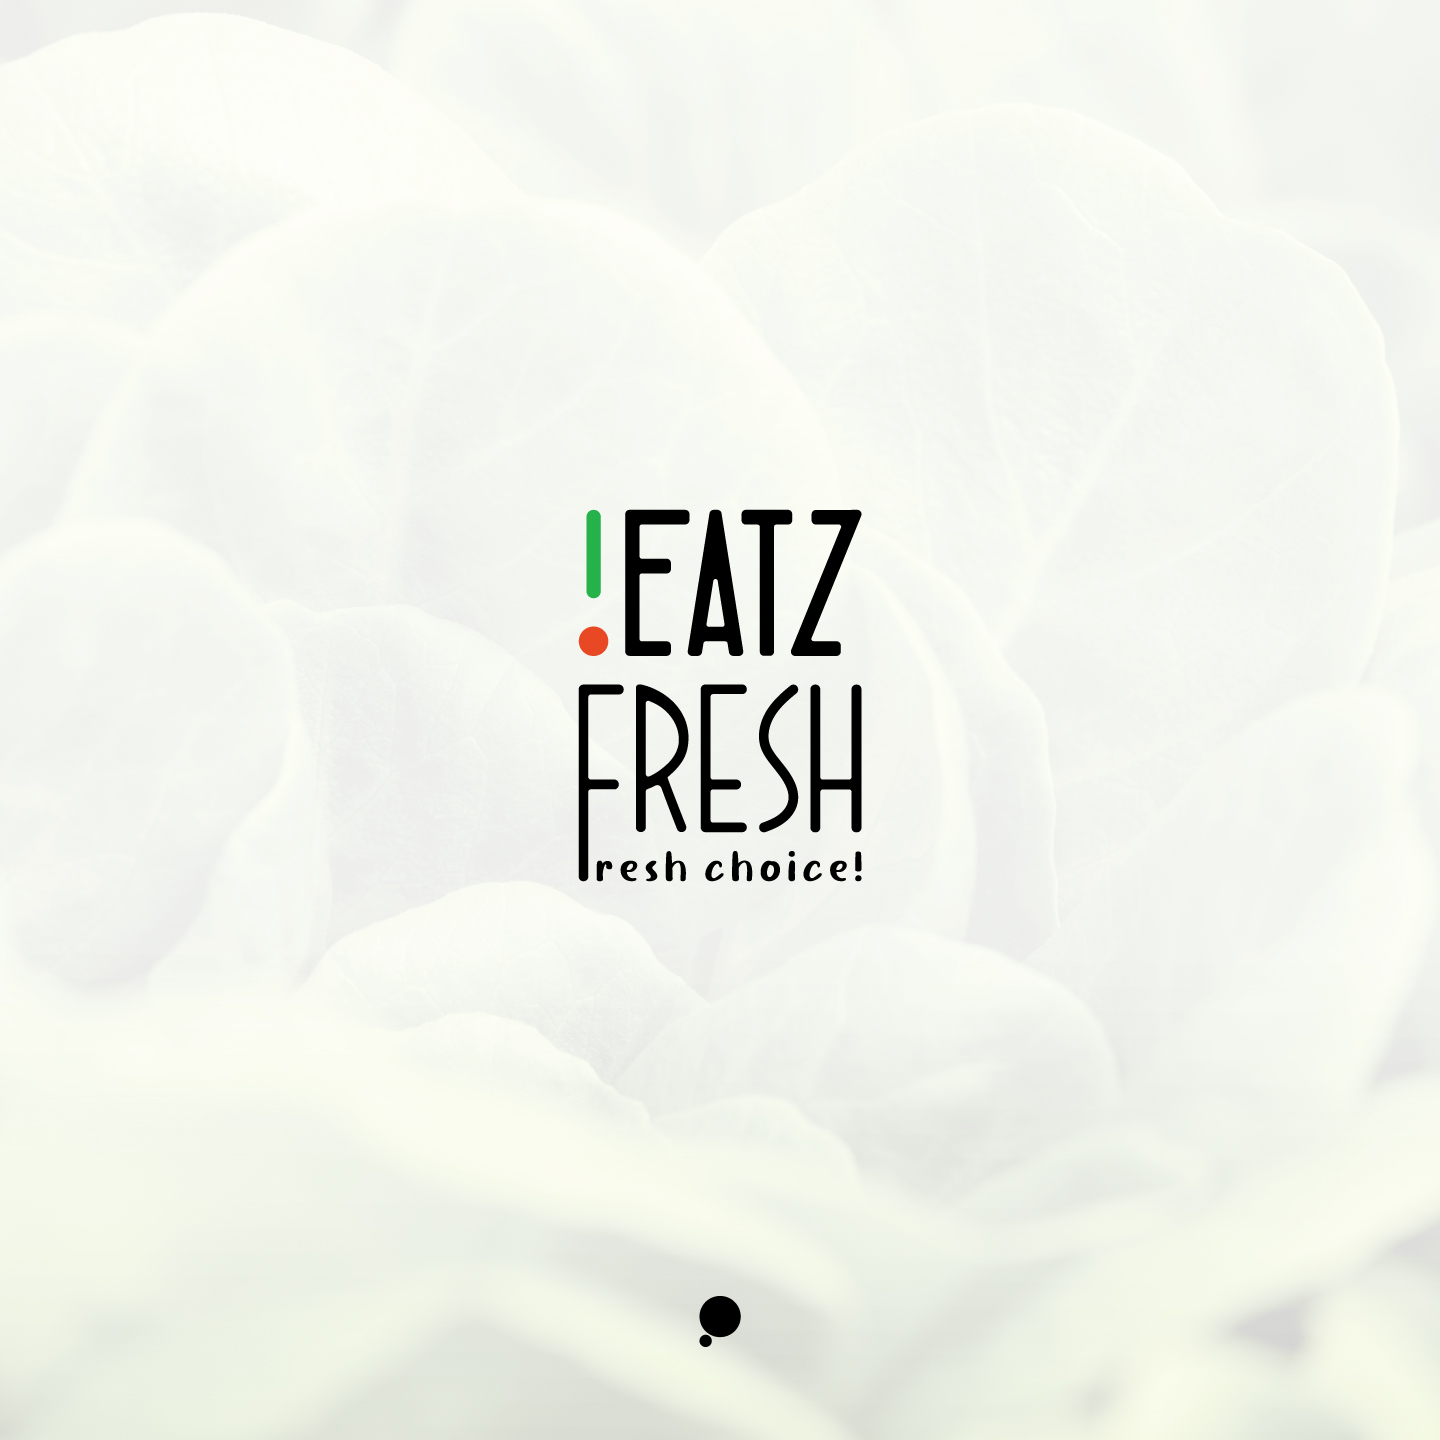 Eatz Fresh Logo